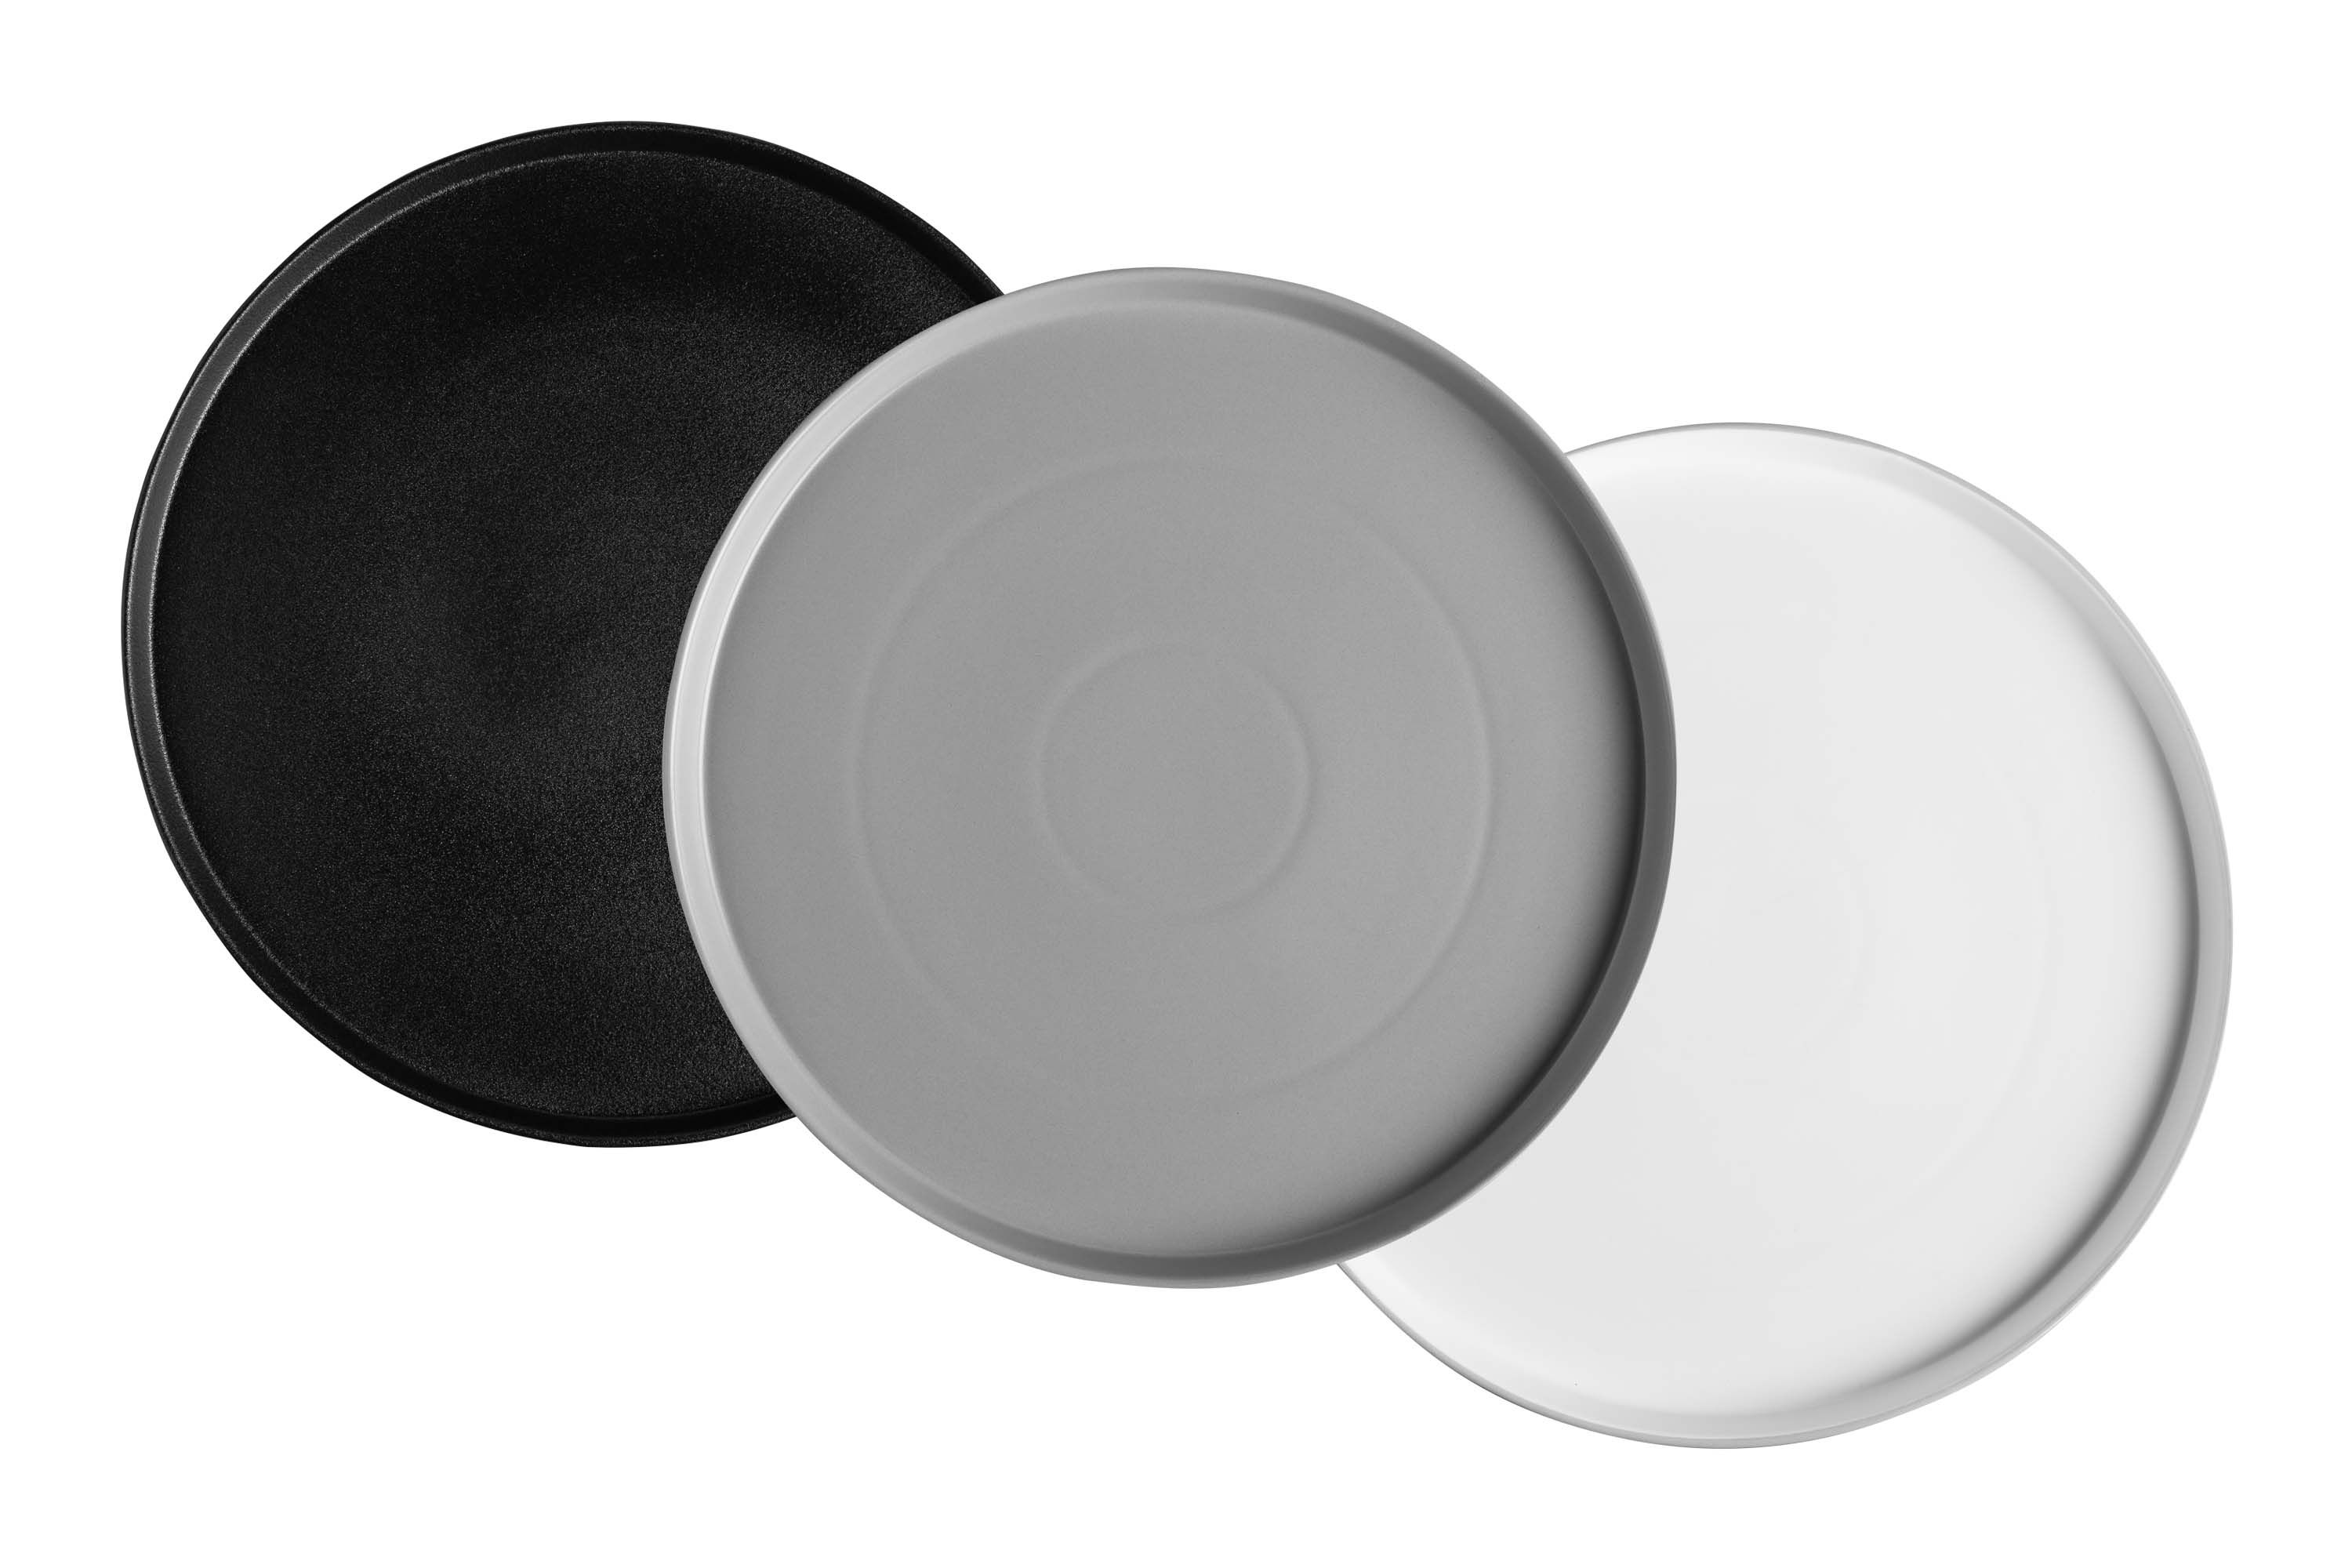 Drei runde Servierplatten in schwarz, weiß und grau